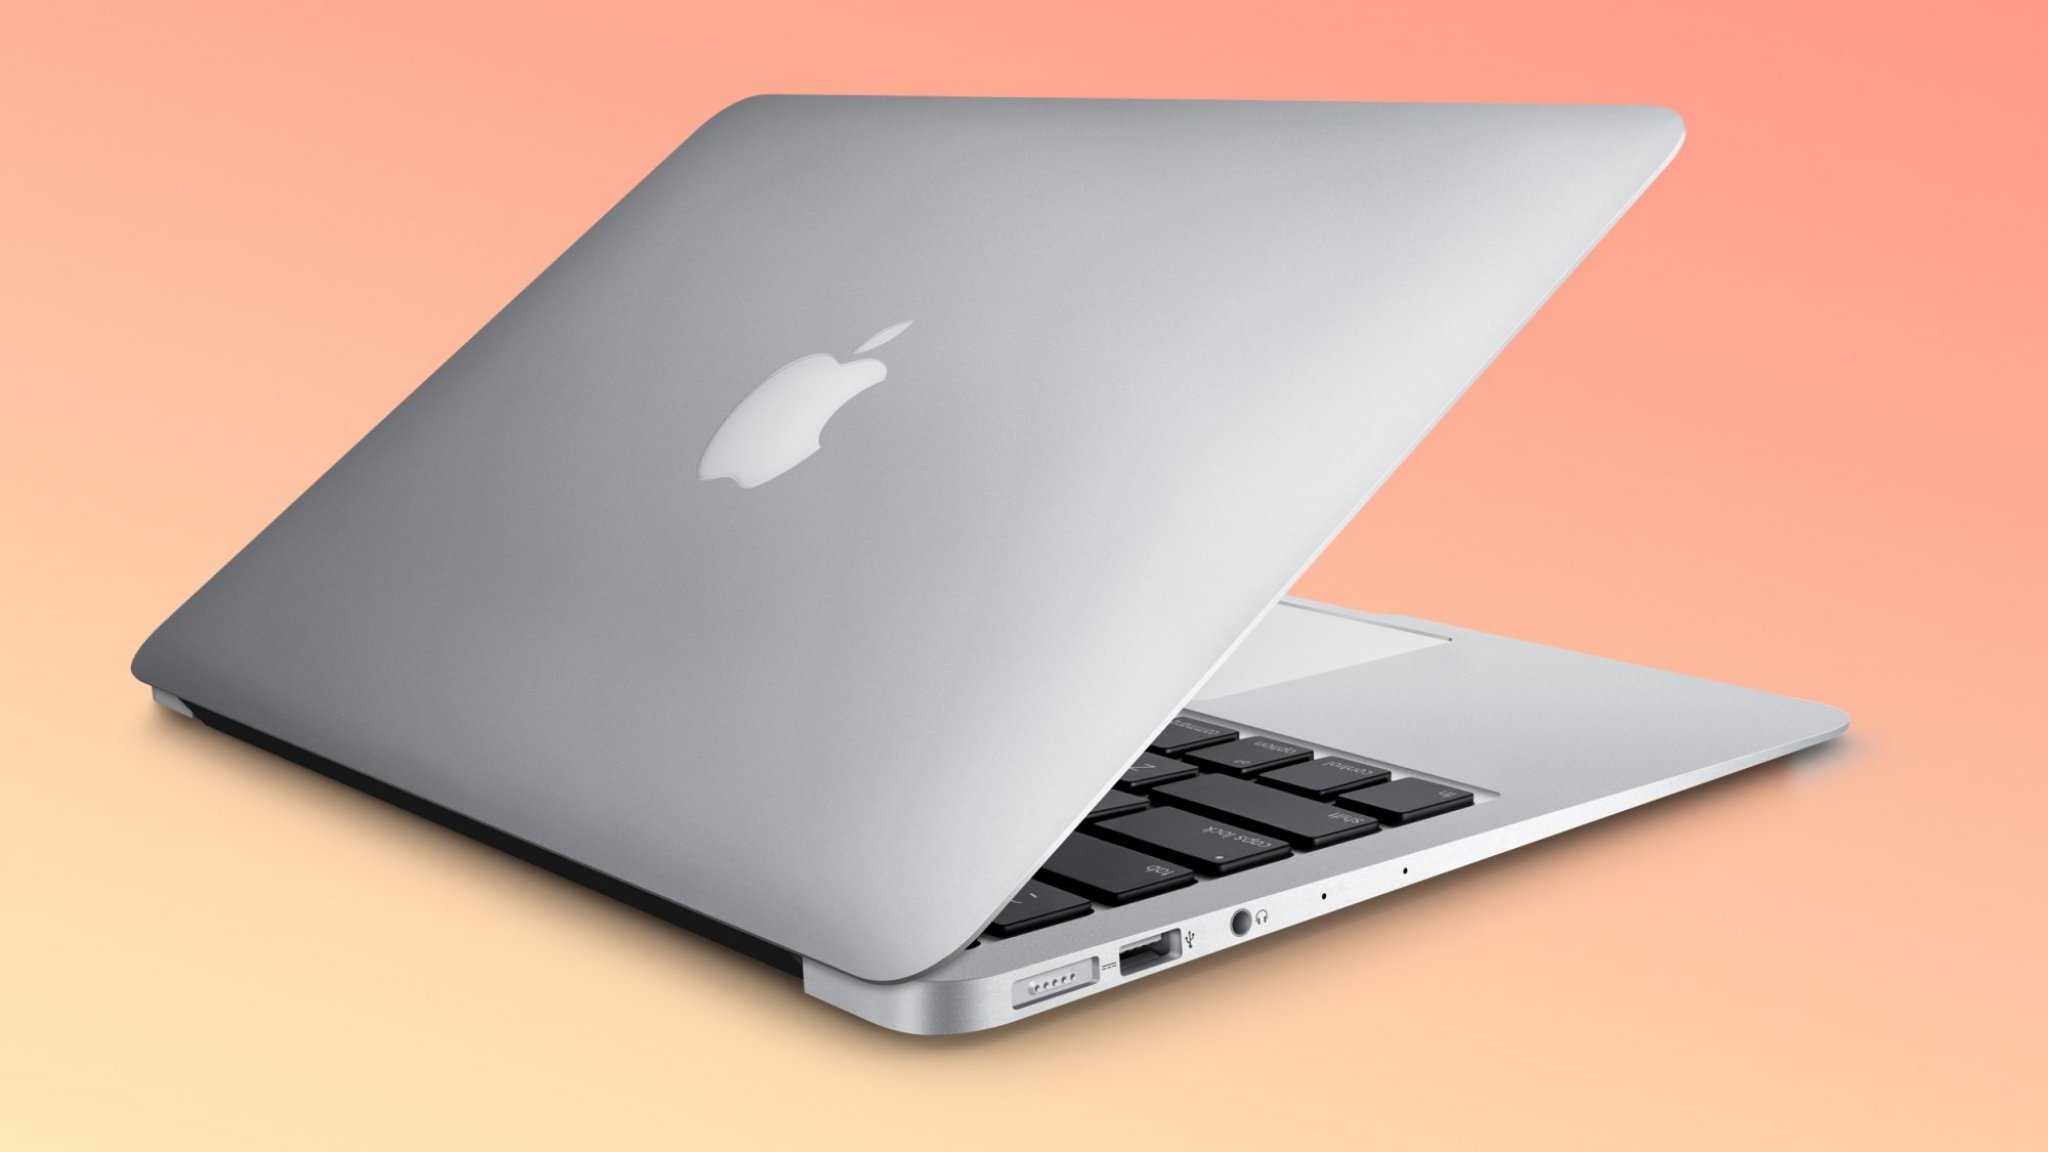 Ноутбук apple macbook air 13 retina (2020 года) z0yj000sz space grey — купить, цена и характеристики, отзывы